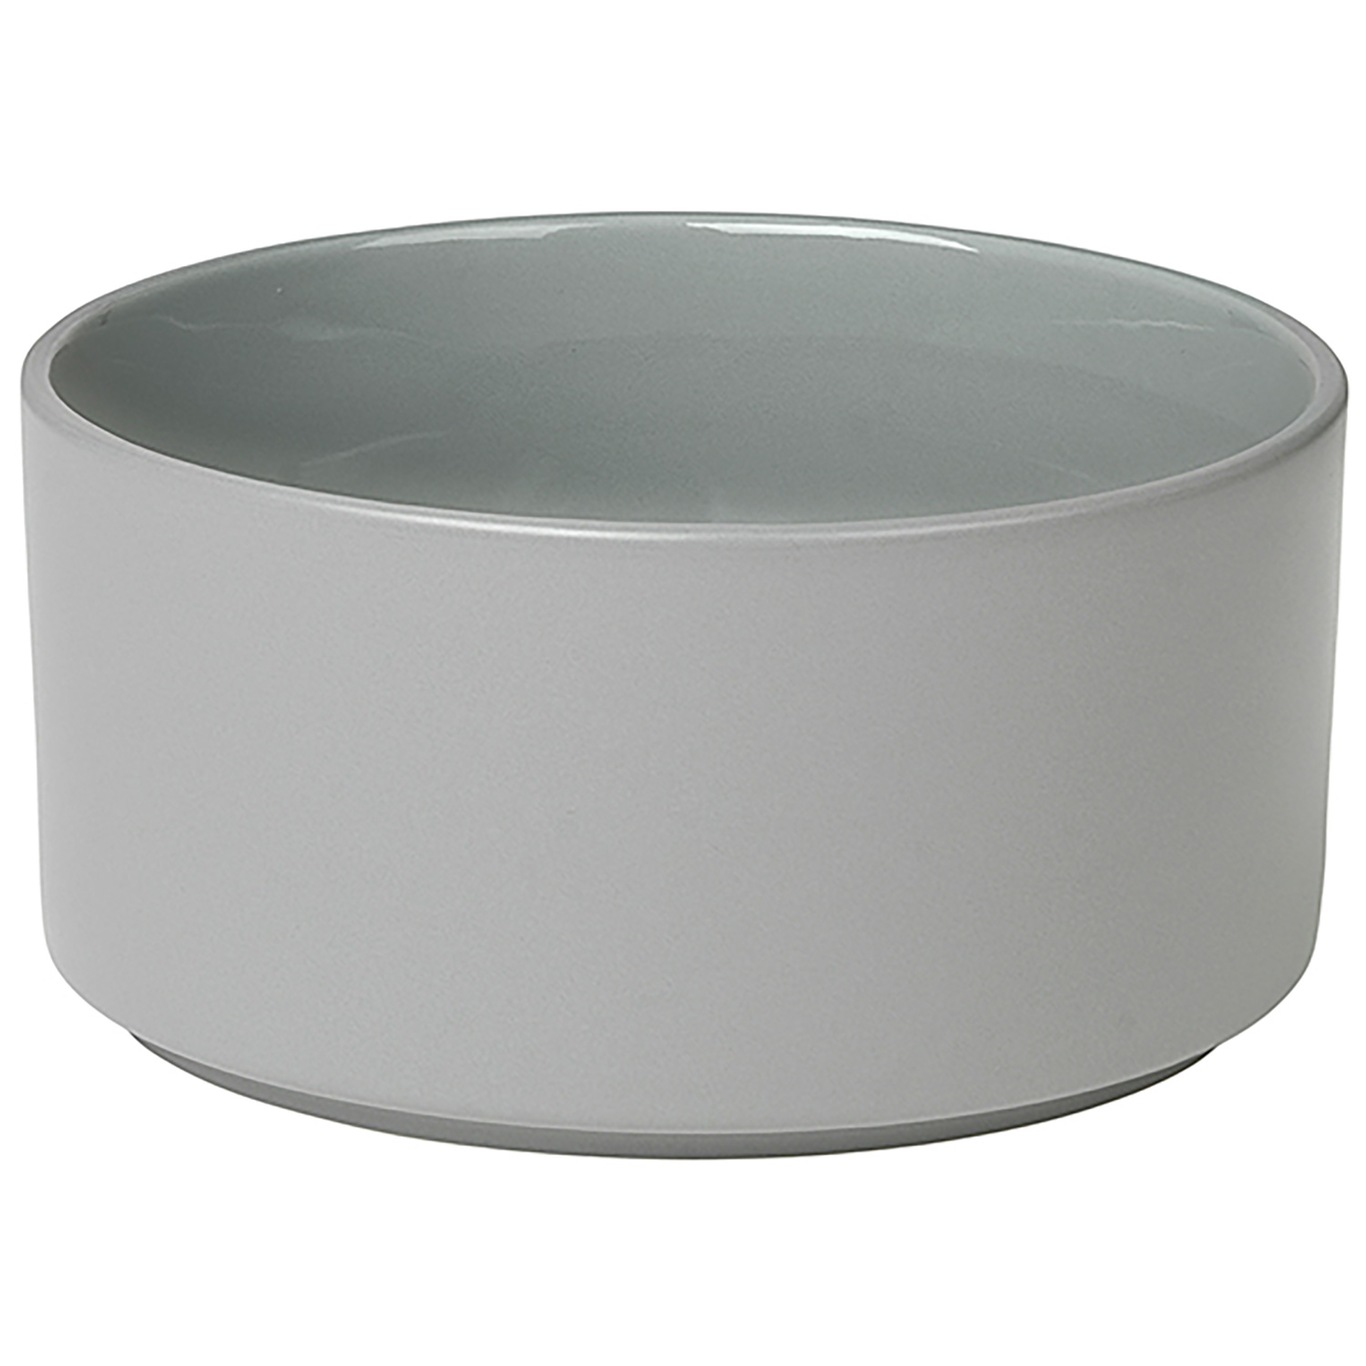 Pilar Bowl Mirage Grey, 14 cm